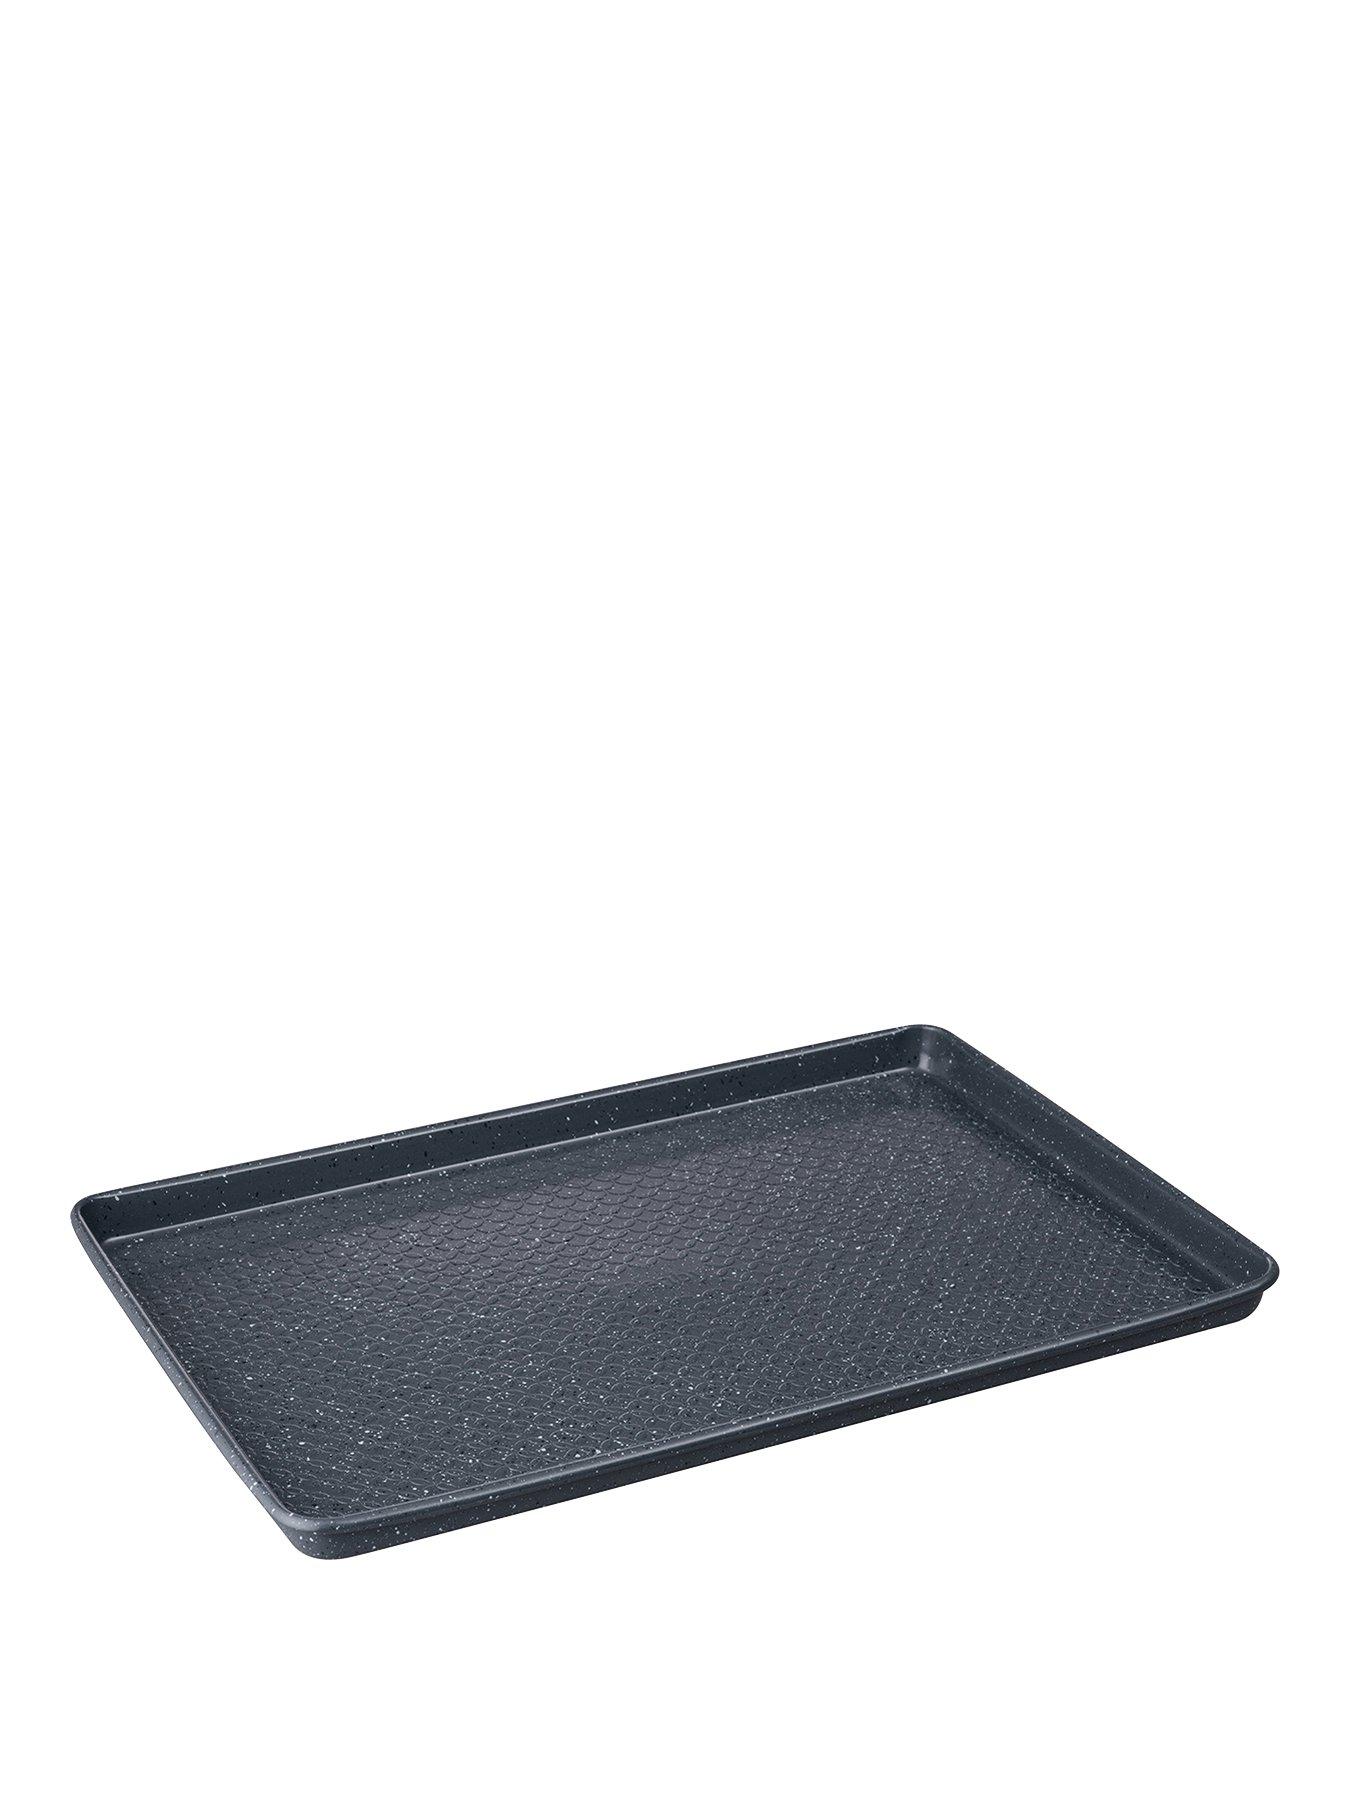 26cm x 1cm Master Class Non-Stick Square Baking Tray